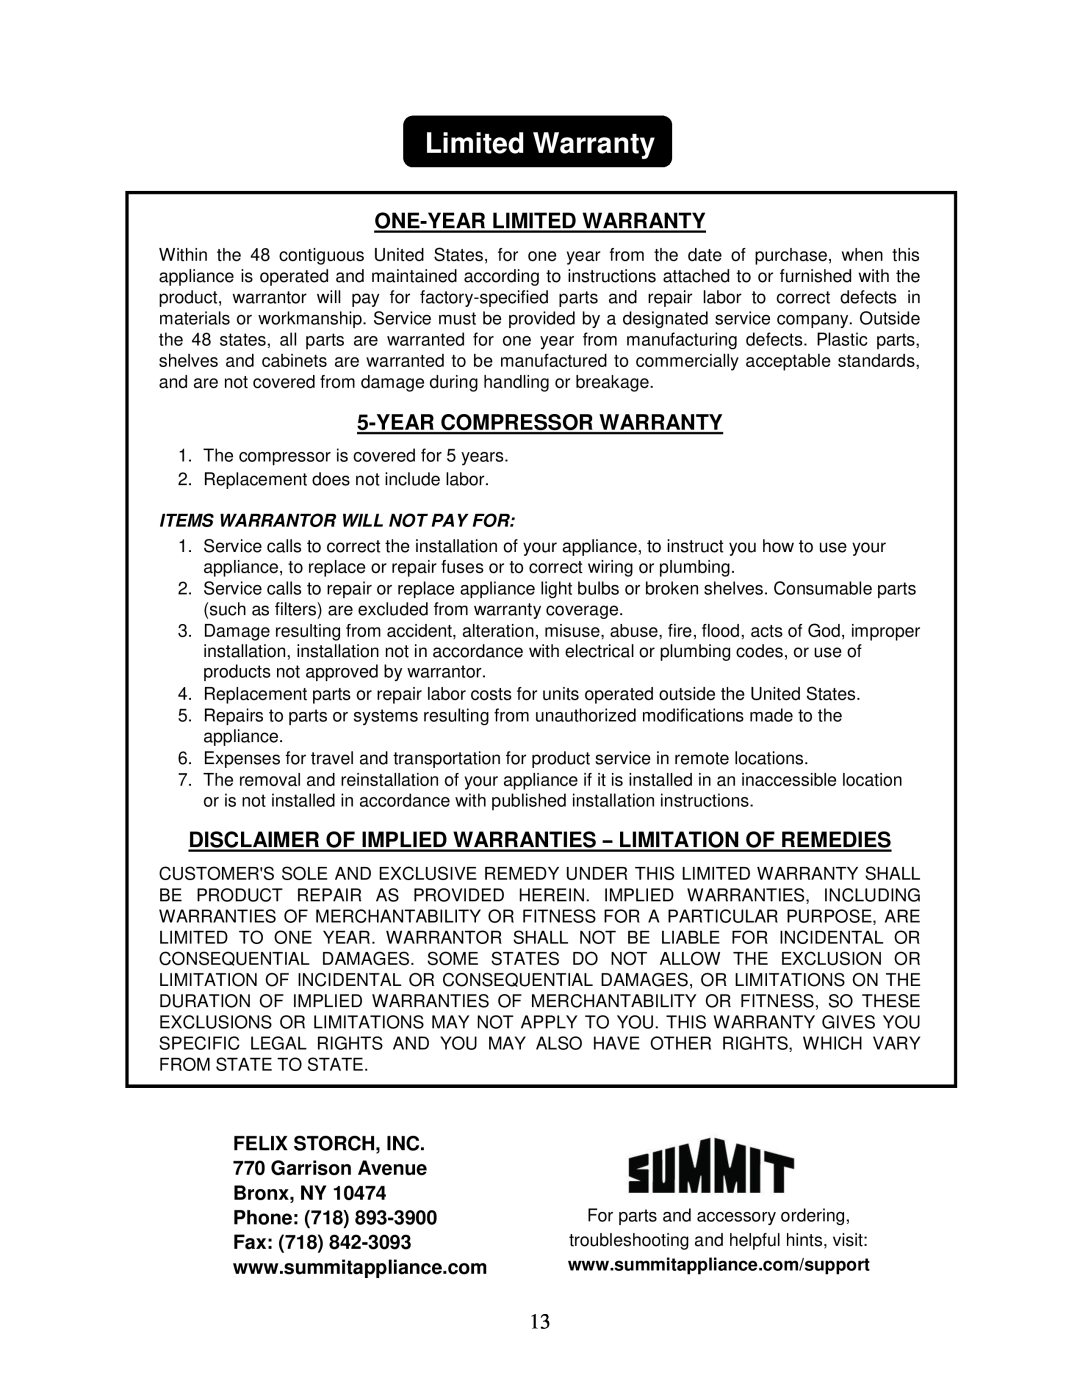 Summit FF1152SS One-Year Limited Warranty, Year Compressor Warranty, FELIX STORCH, INC 770 Garrison Avenue Bronx, NY 